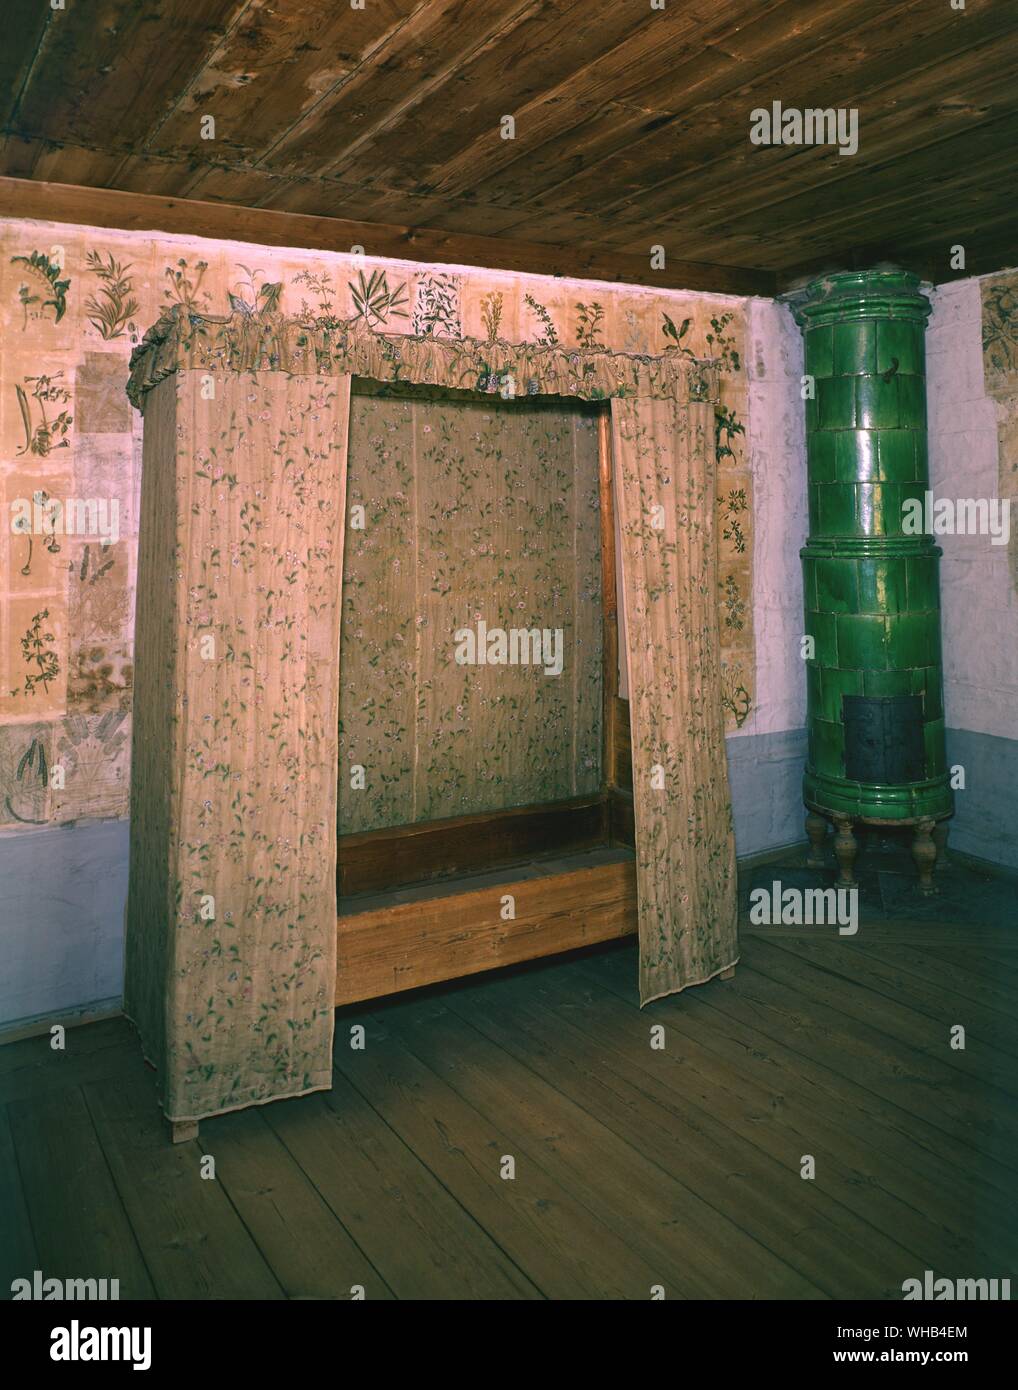 Le caratteristiche architettoniche : Letti e camere da letto - Linnaeus' s camera da letto a Hammarby , Uppsala , Svezia. Linnaeus tappezzato le pareti del suo studio e camera da letto con piastre da due opere sui fiori Foto Stock